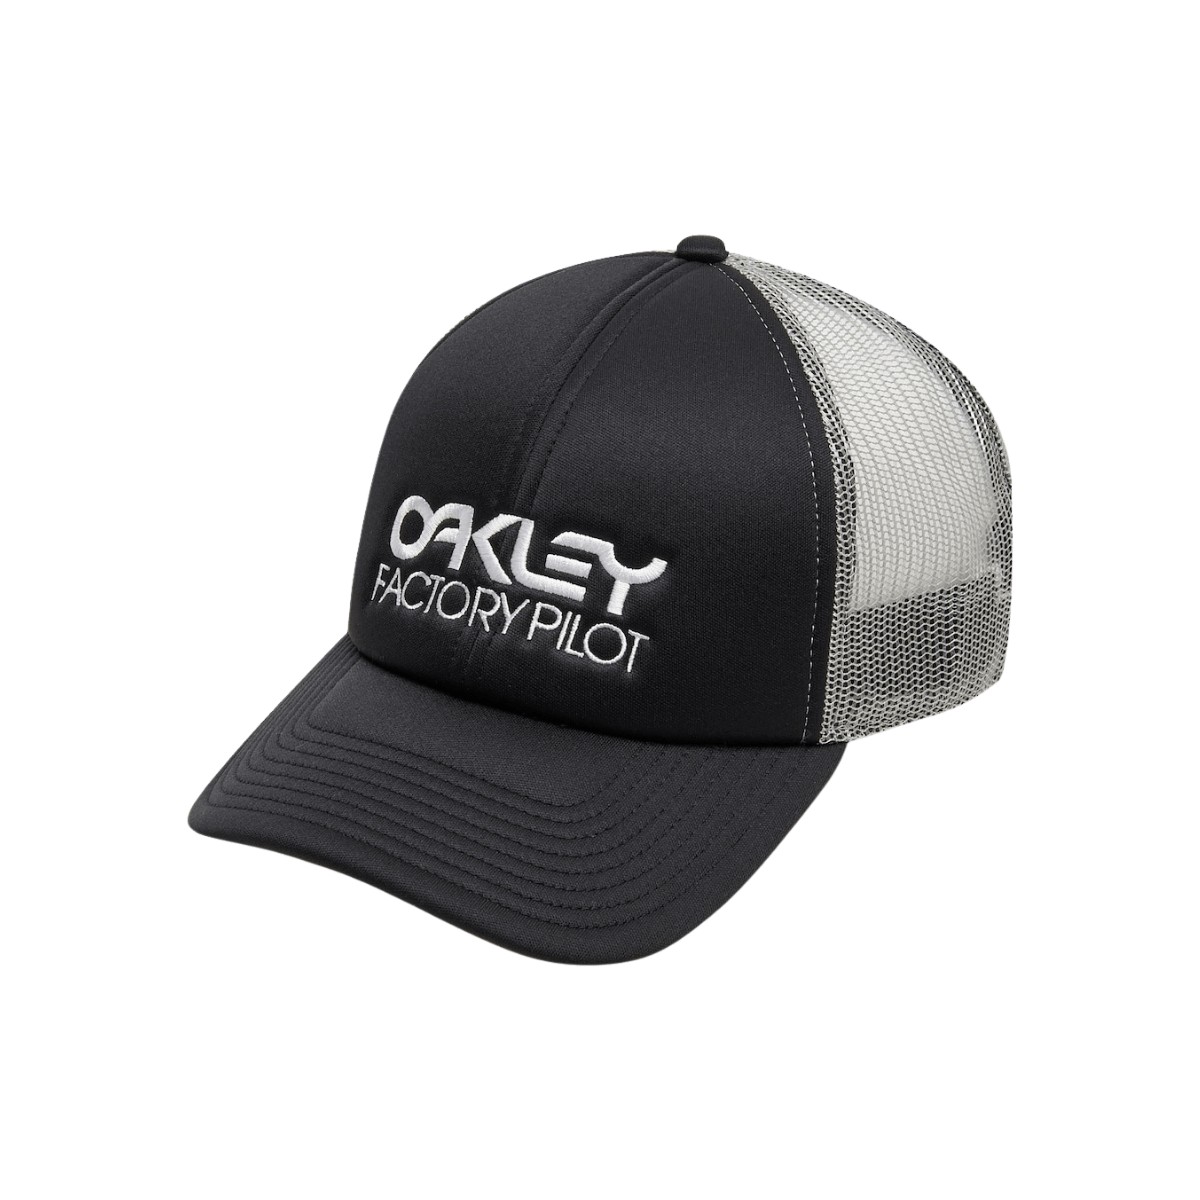 Oakley Factory Pilot Trucker Hat Schwarze Kappe